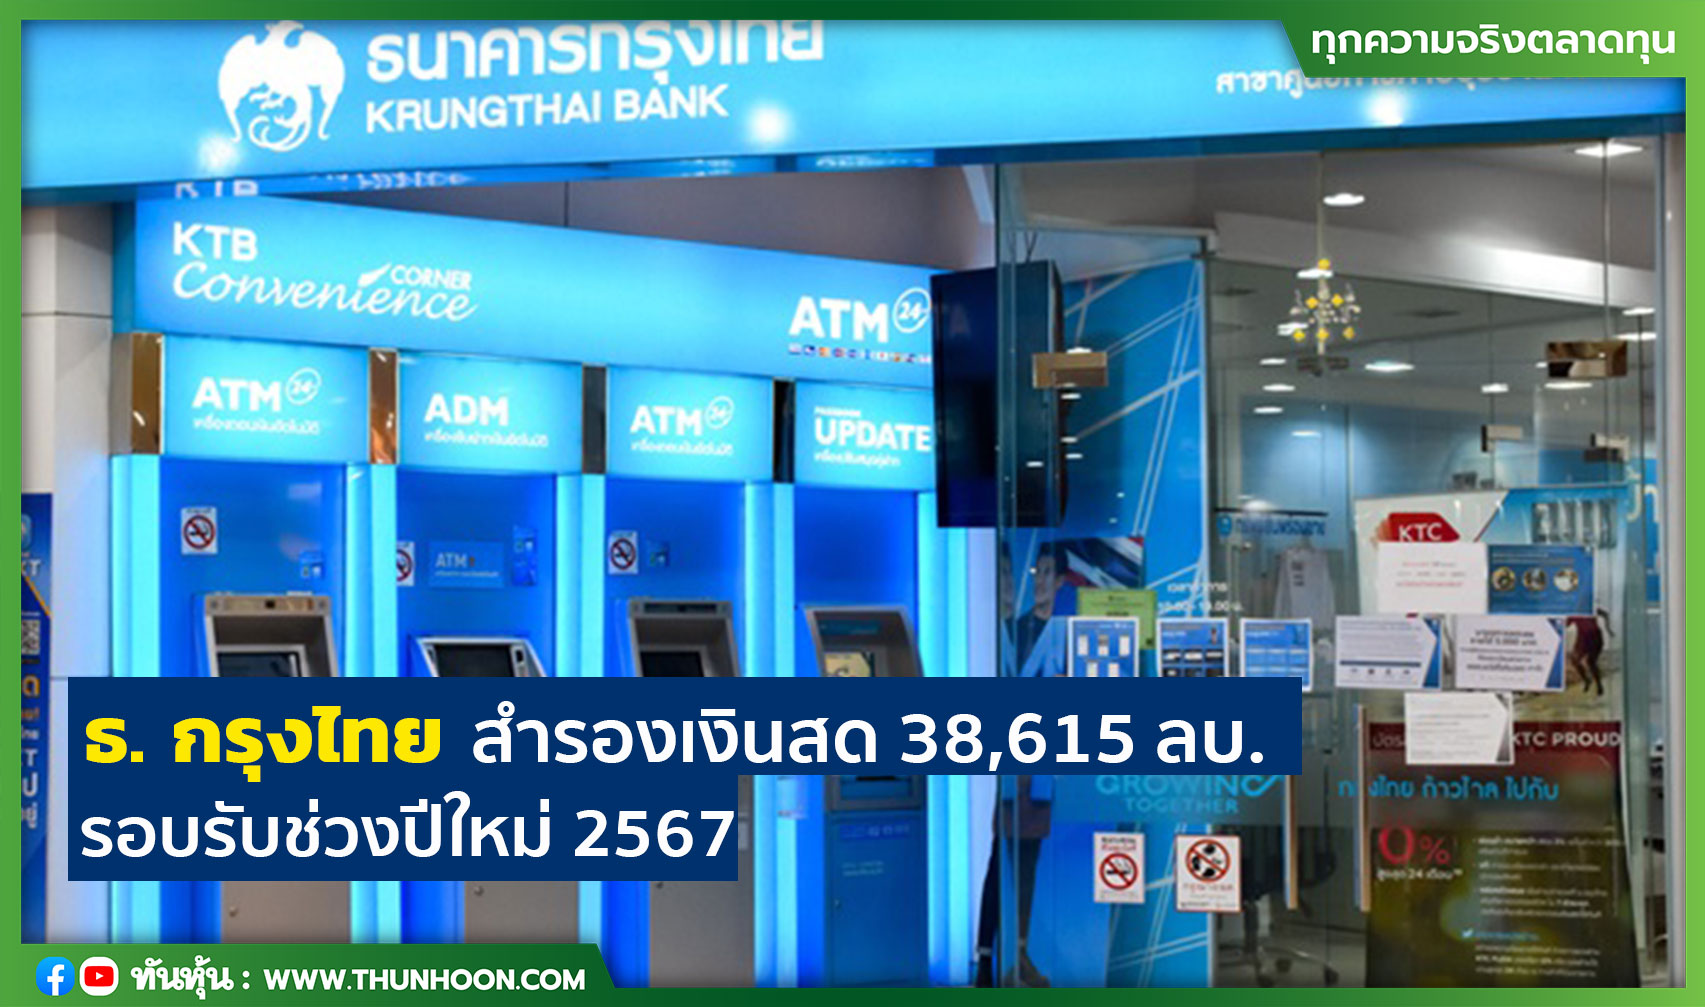 ธ. กรุงไทย สำรองเงินสด 38,615 ลบ. รองรับช่วงปีใหม่ 2567